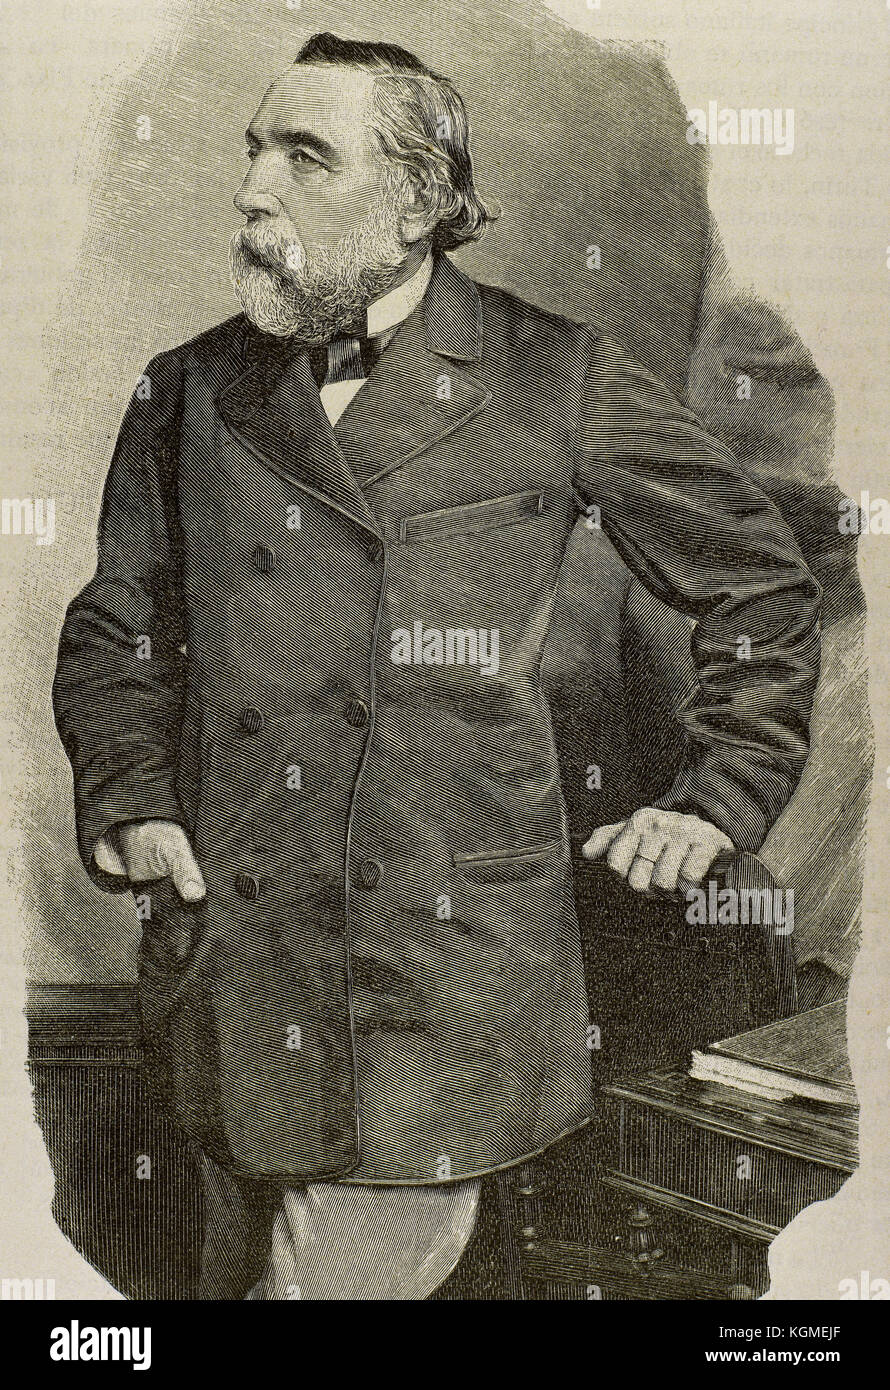 Ion Ghica (1816-1897). La révolution roumaine, mathématicien, diplomate et homme politique. Il a été Premier Ministre de la Roumanie 5 fois. Portrait. La gravure. Banque D'Images